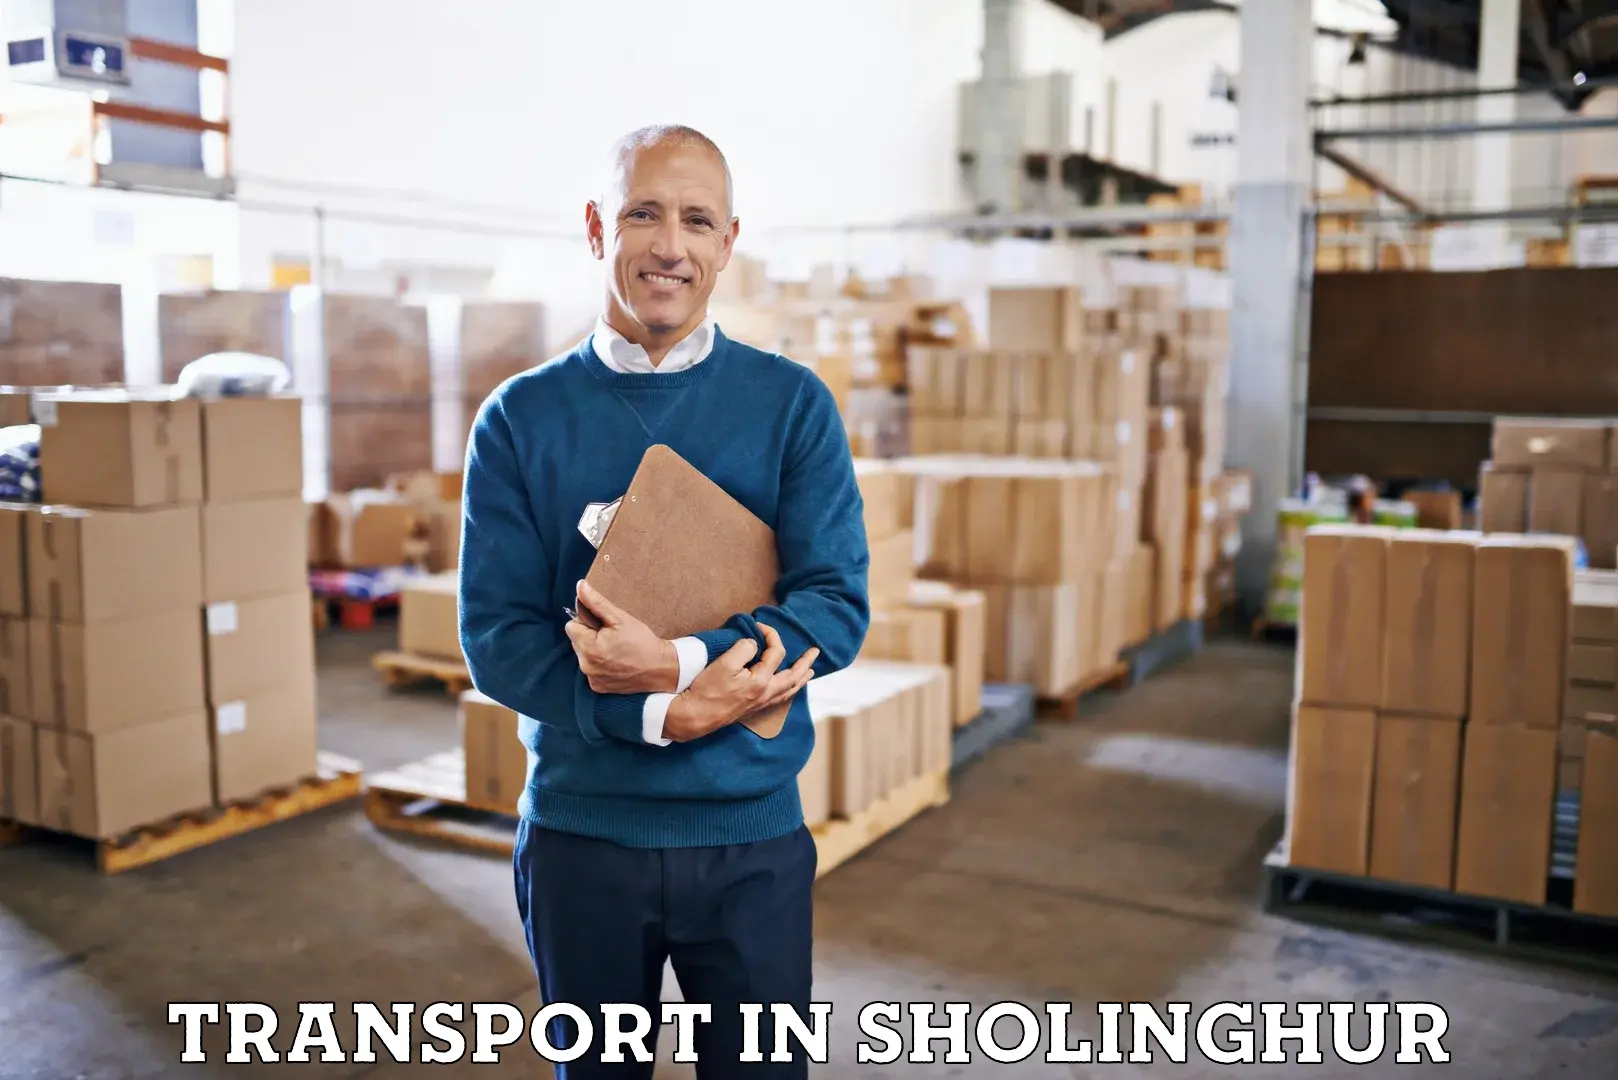 Furniture transport service in Sholinghur